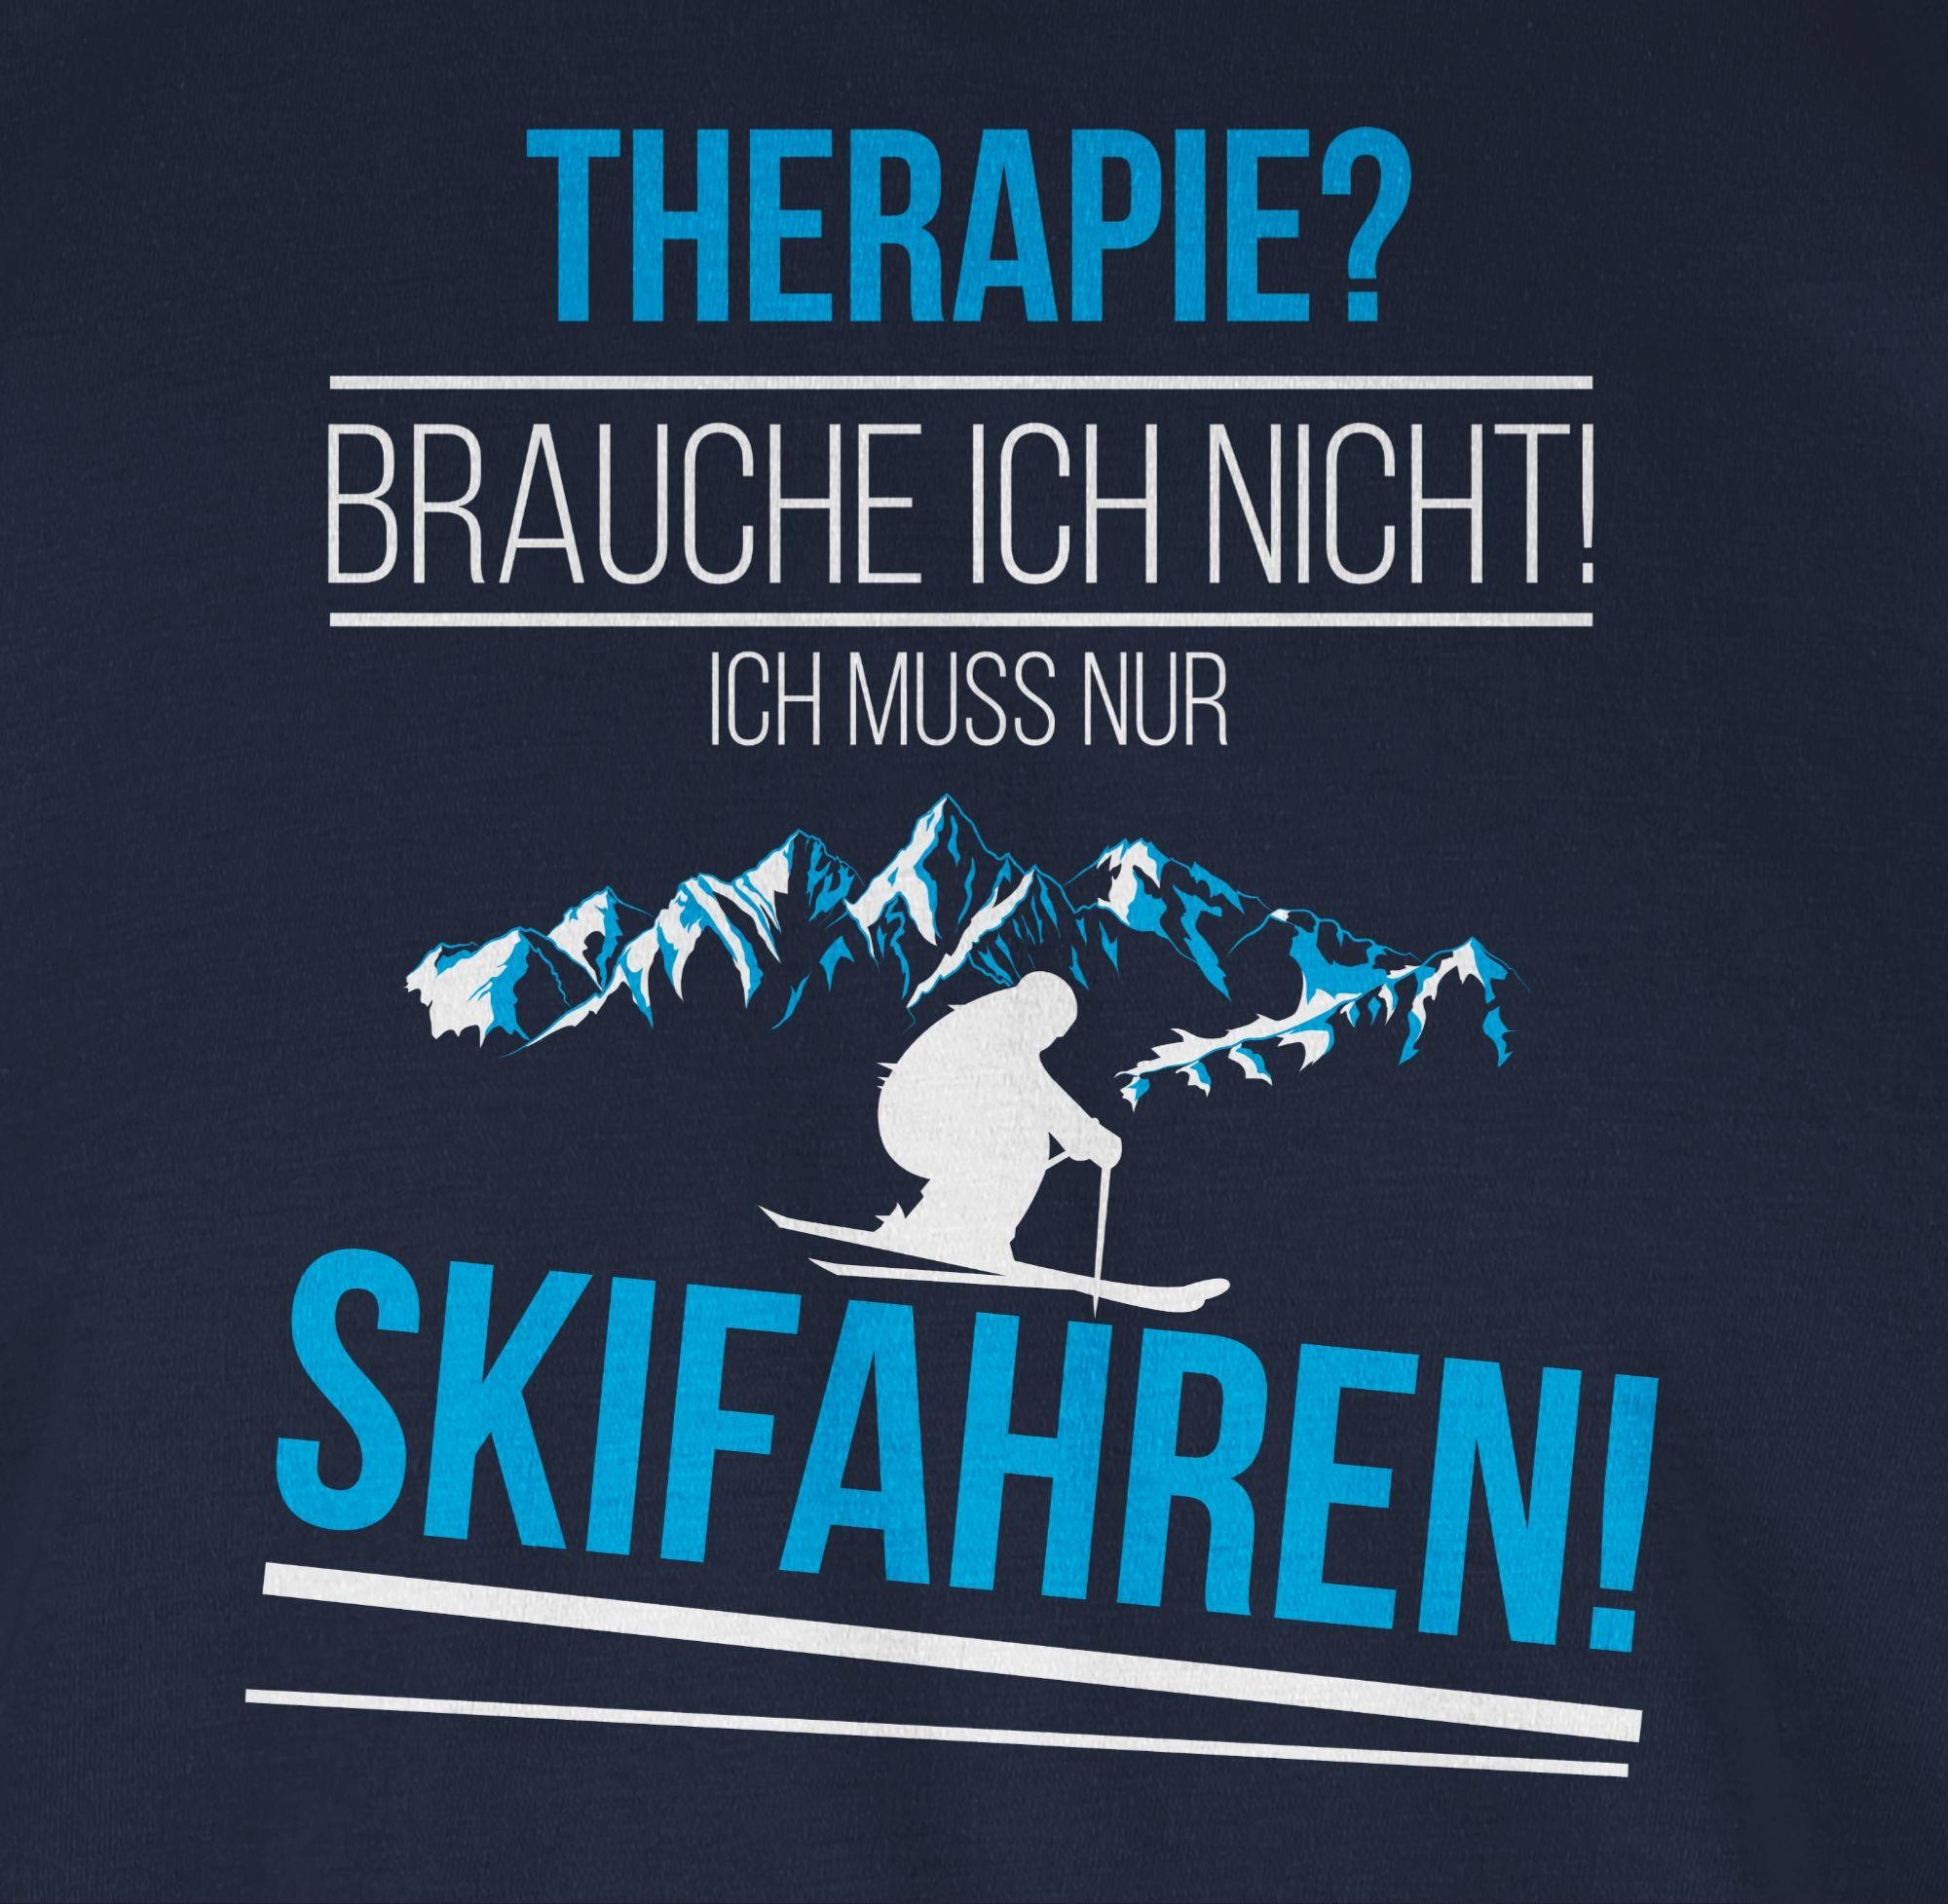 Shirtracer T-Shirt 1 Therapie? Blau mehr und Snowboard, Brauch Navy nicht! Ski Skifahren! ich